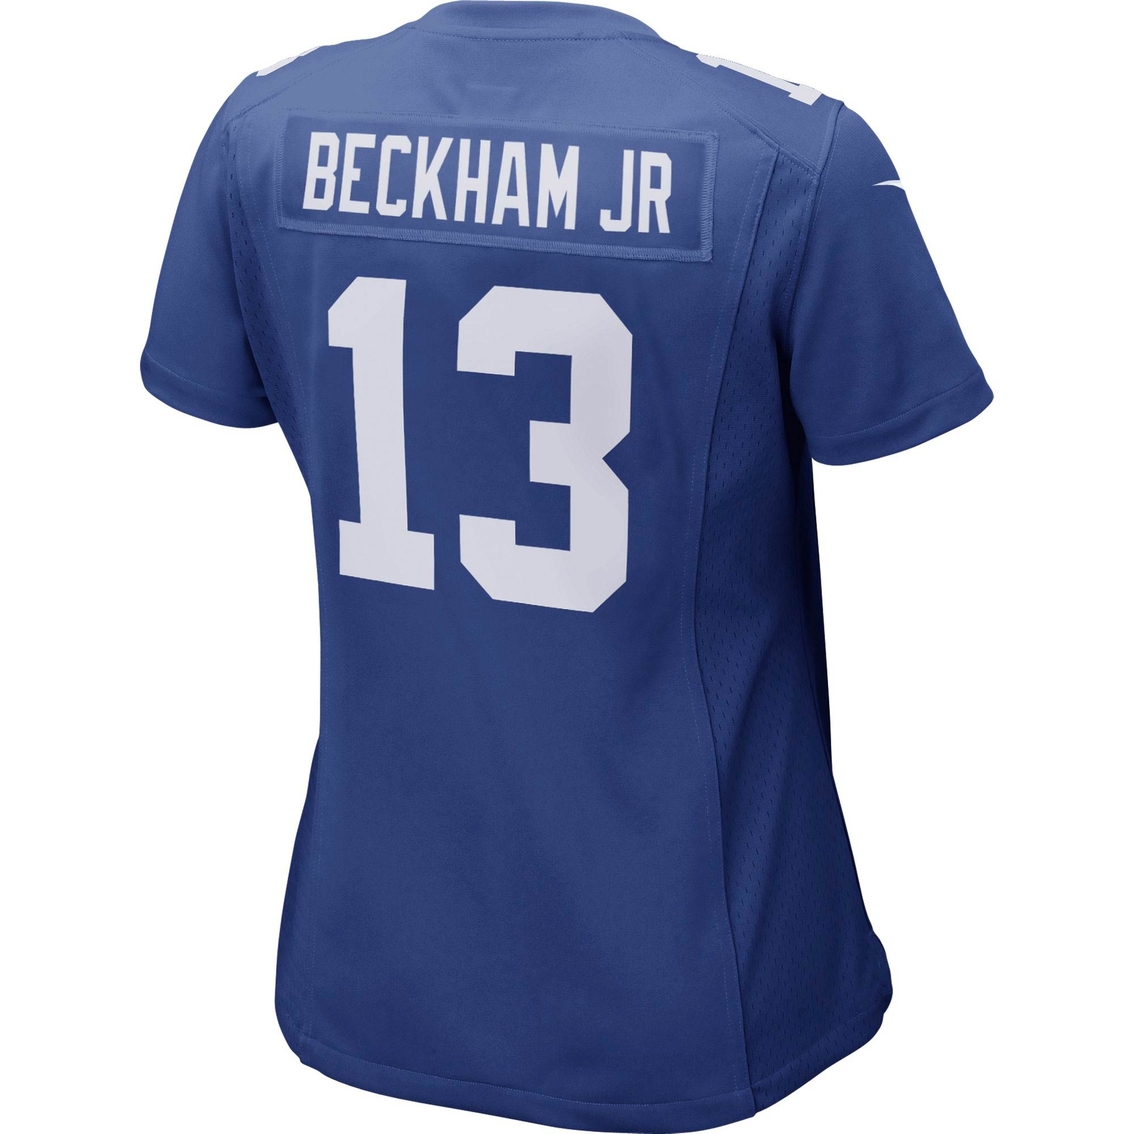 Nike NFL New York Giants Women's Odell Beckham Jersey - Image 2 of 2